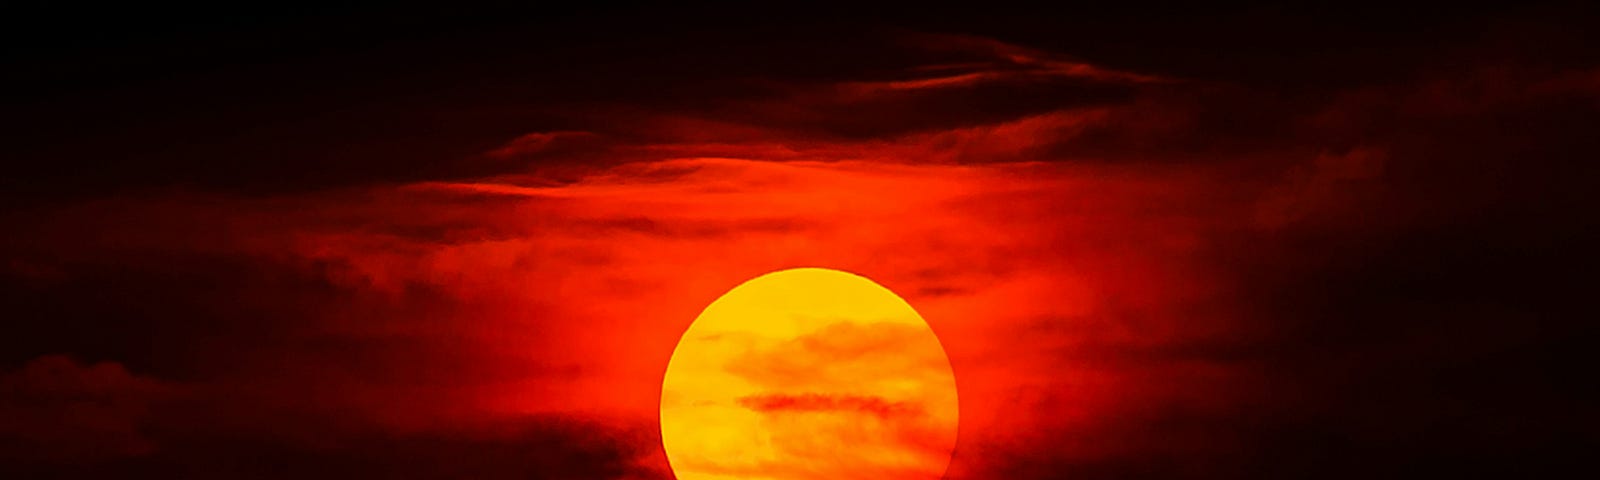 The sun against a crimson sky